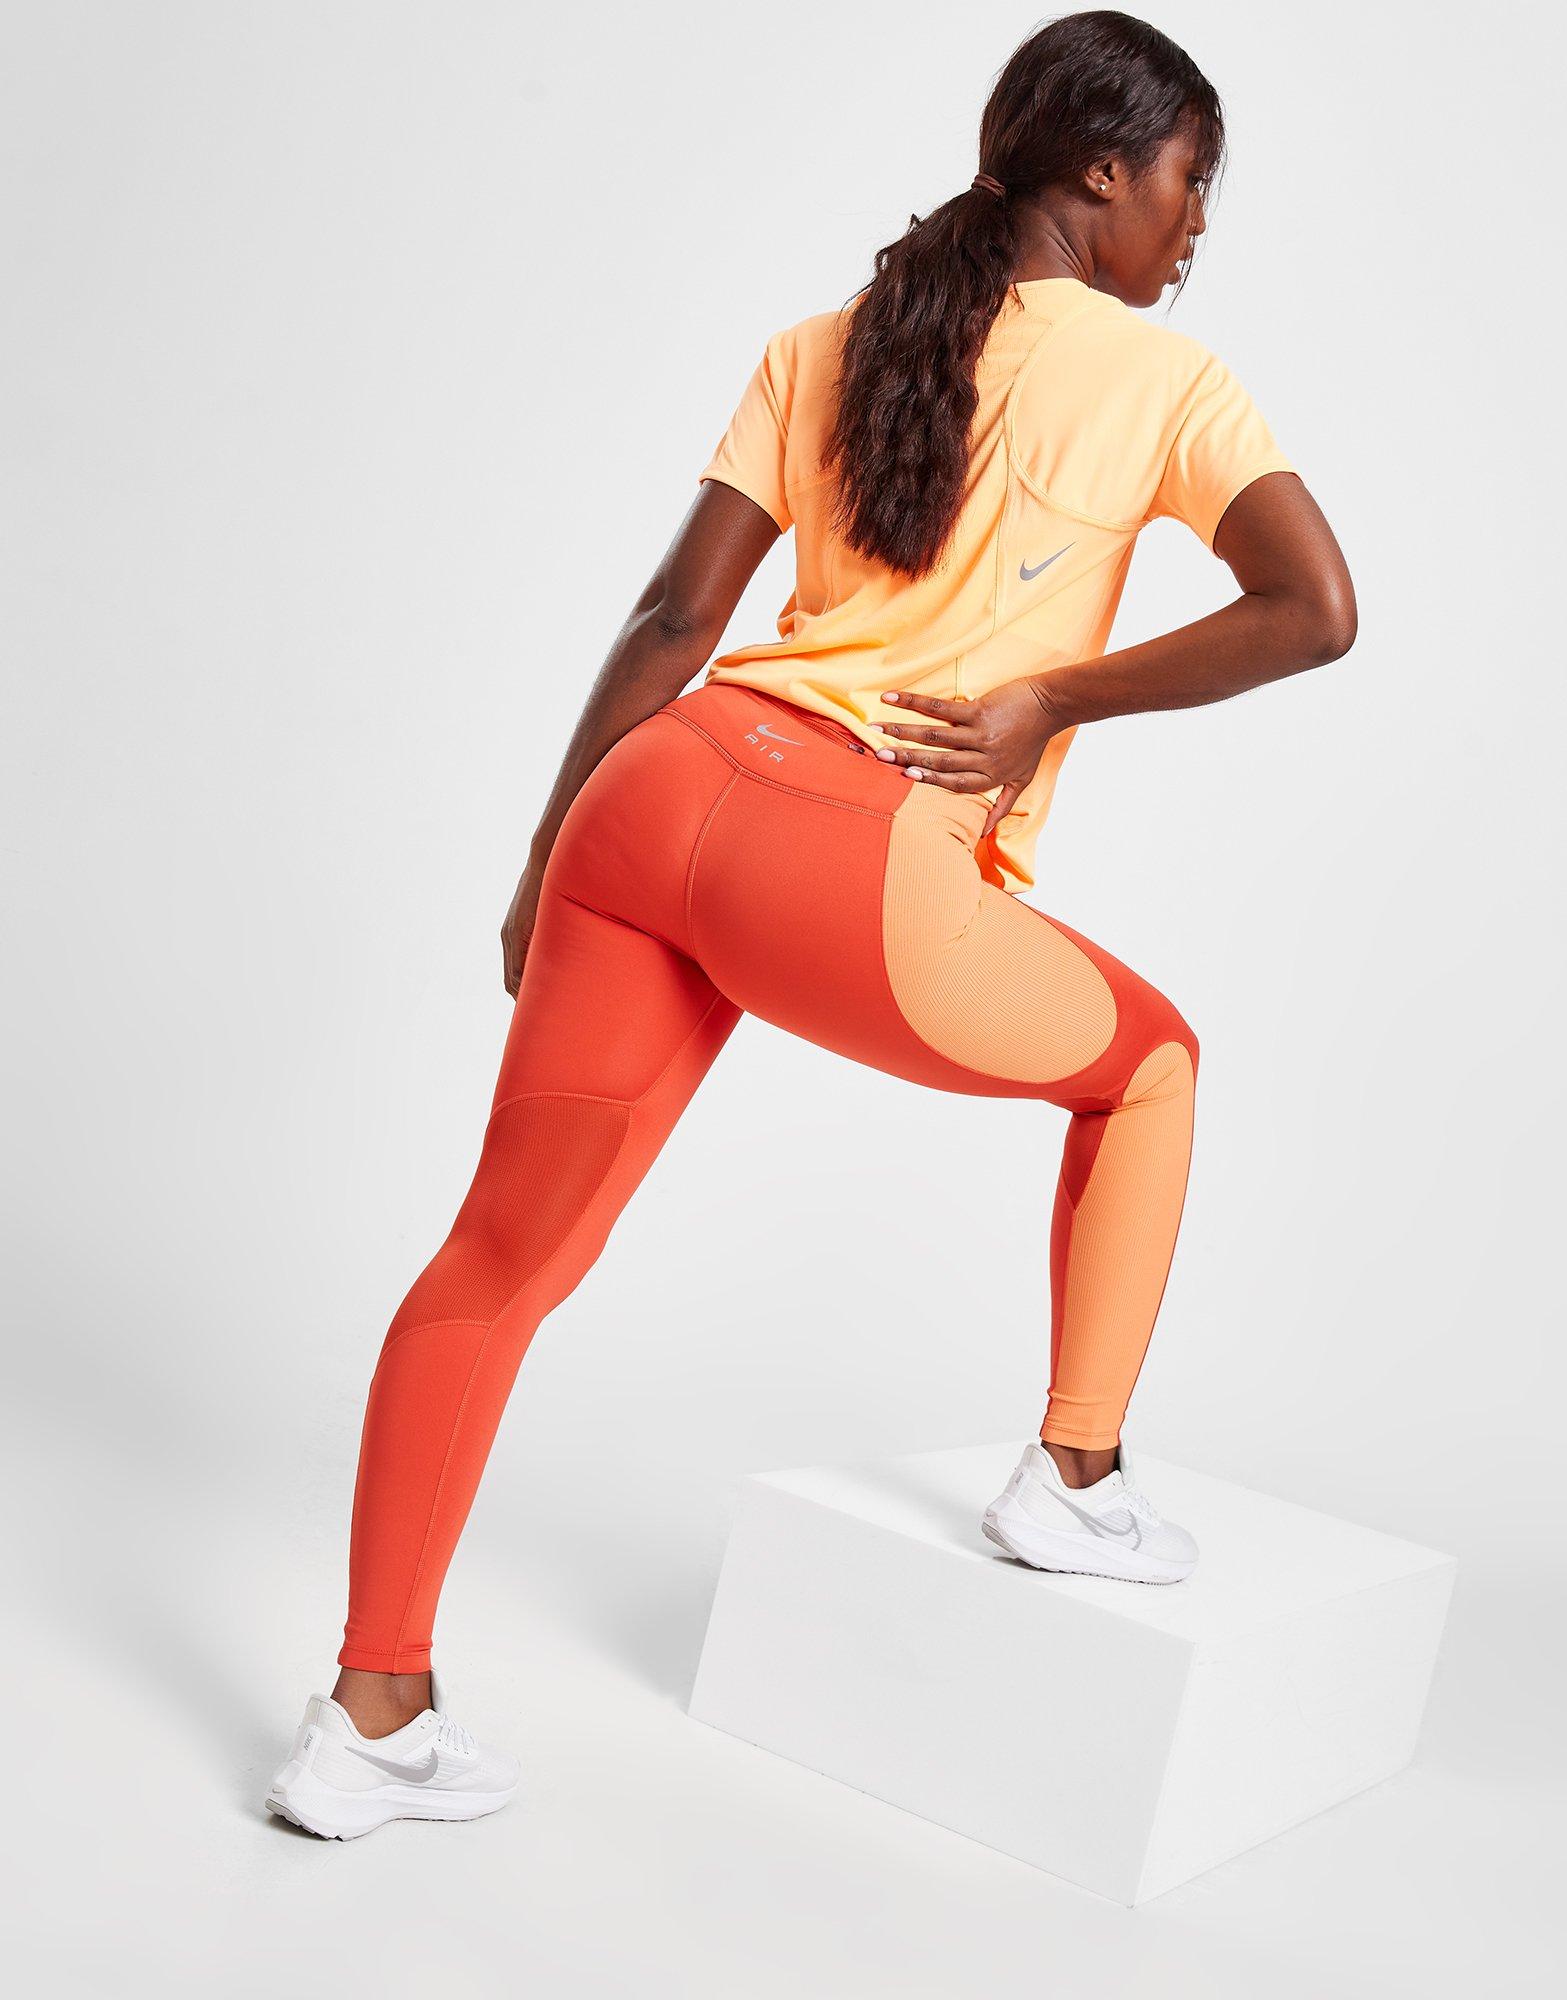 Nike One Women's Mid-Rise 7/8 Mesh-Panelled Leggings. Nike NL